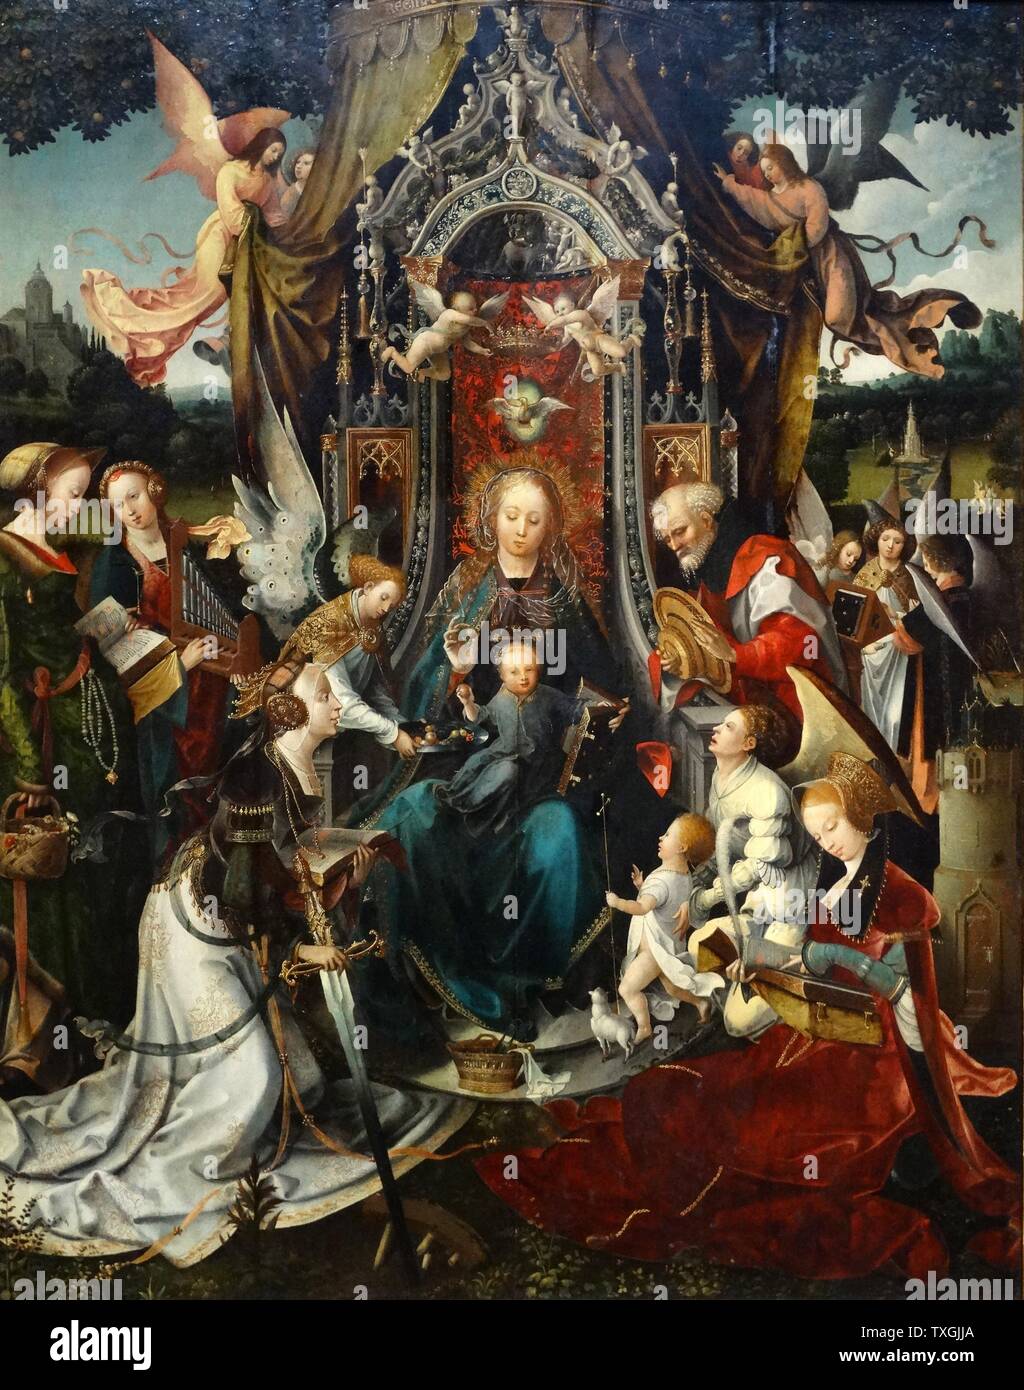 Détail de la peinture intitulée 'La Vierge et l'enfant ont intronisé, avec les Saints' de Jan de Beer (1470-1528) un peintre et dessinateur Russisch. En date du 16e siècle Banque D'Images